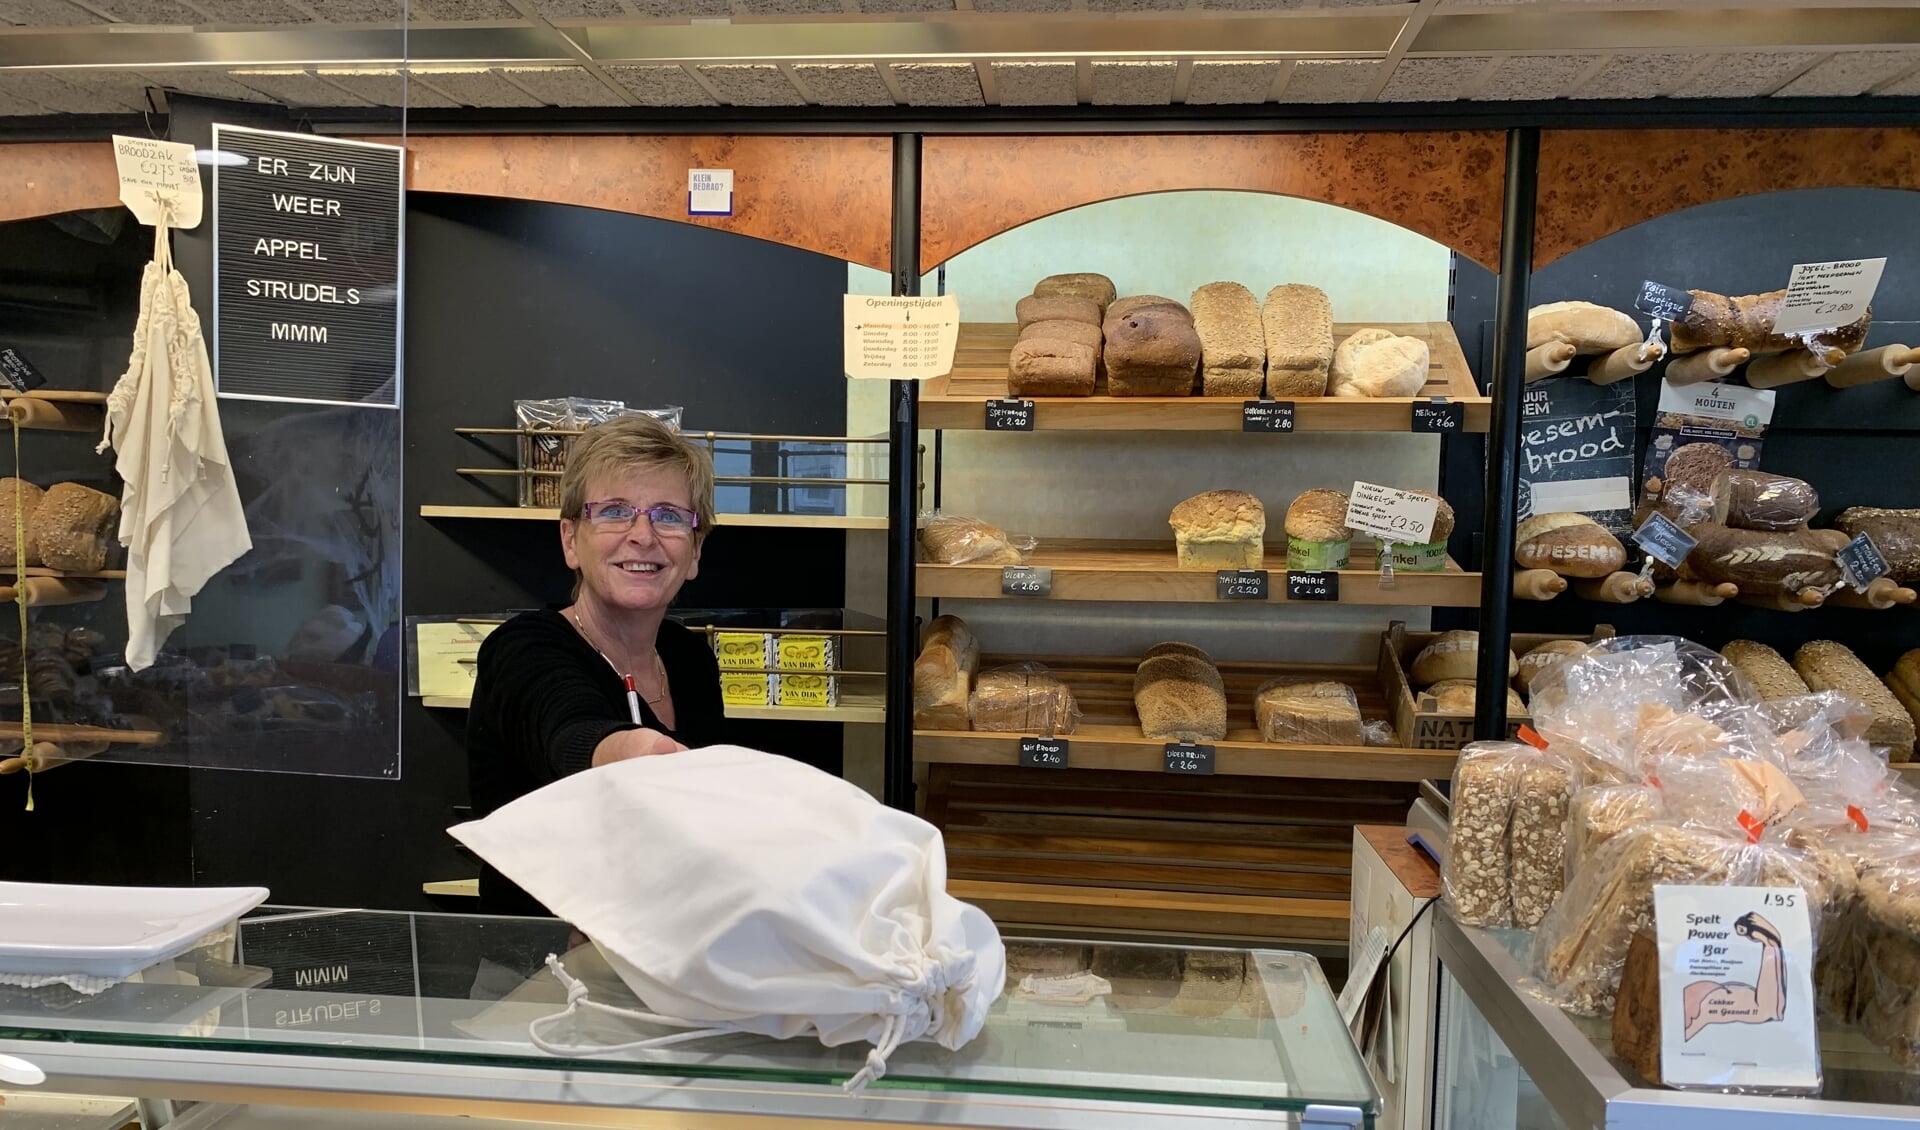 Marijke overhandigd in Bakkerij Brakenhoff een brood in een duurzame zak. Brakenhoff is een van de vele winkels die willen gaan voor minder afval.